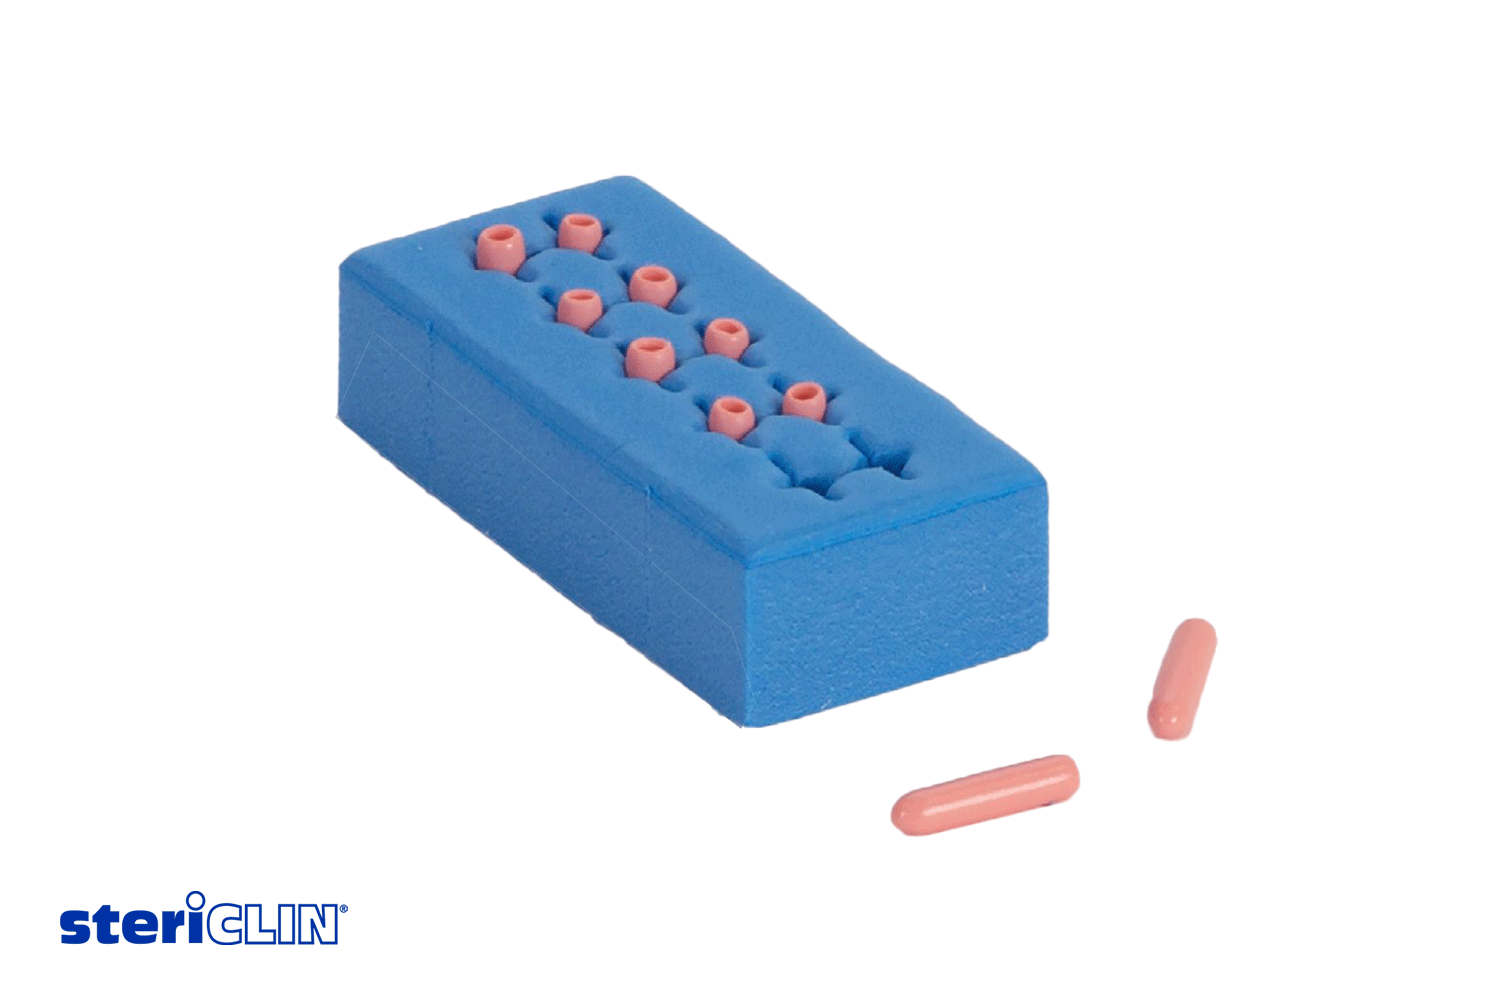 SteriClin Instrumentenpolster aus blauem Schaumstoff mit rosa Haltern